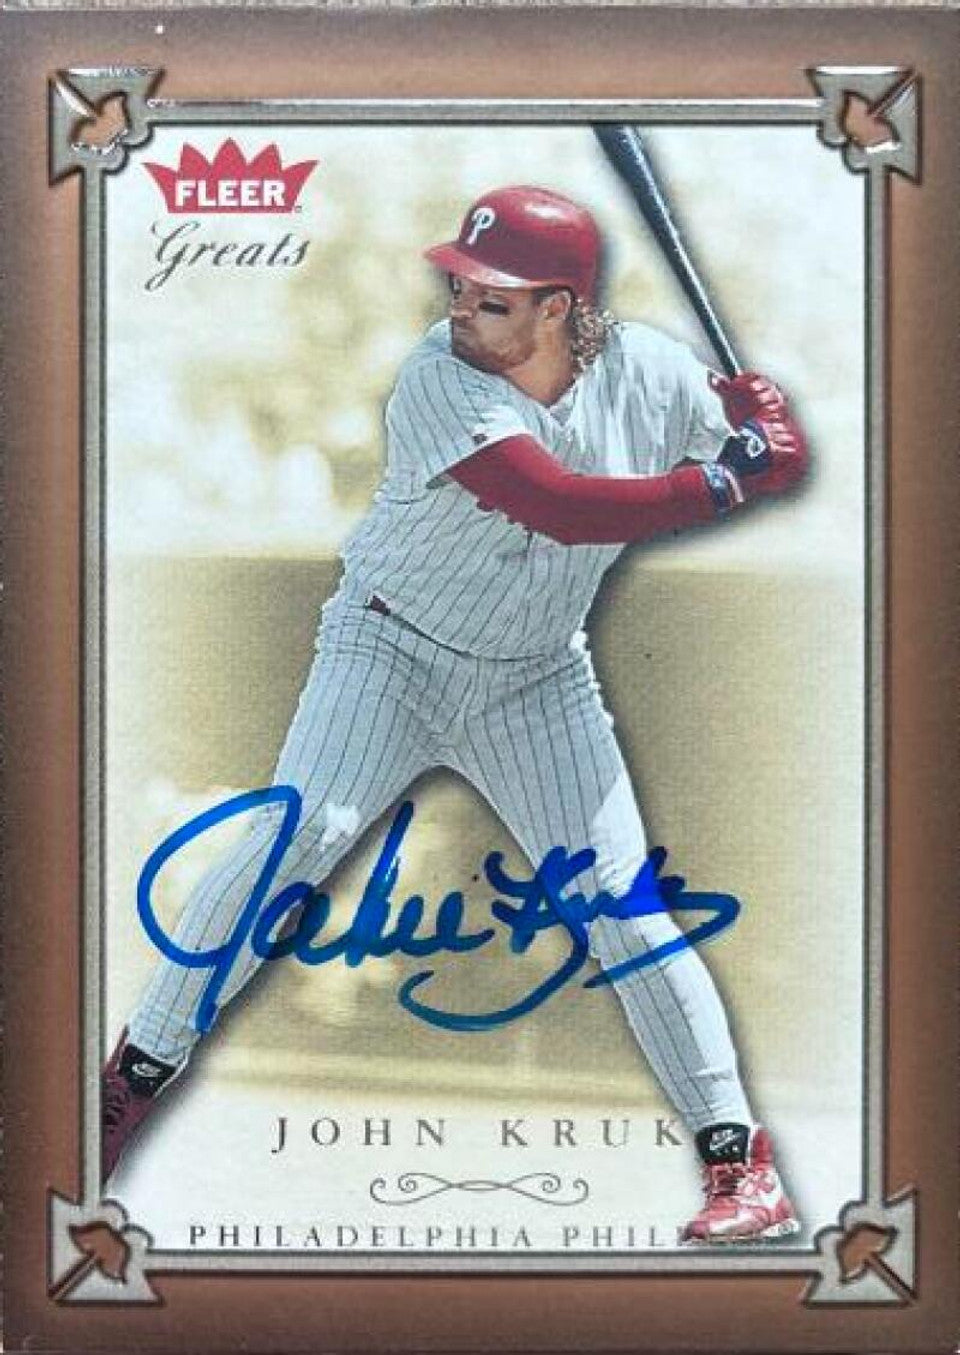 John Kruk Signed 2004 Fleer Greats of the Game Baseball Card - Philadelphia Phillies